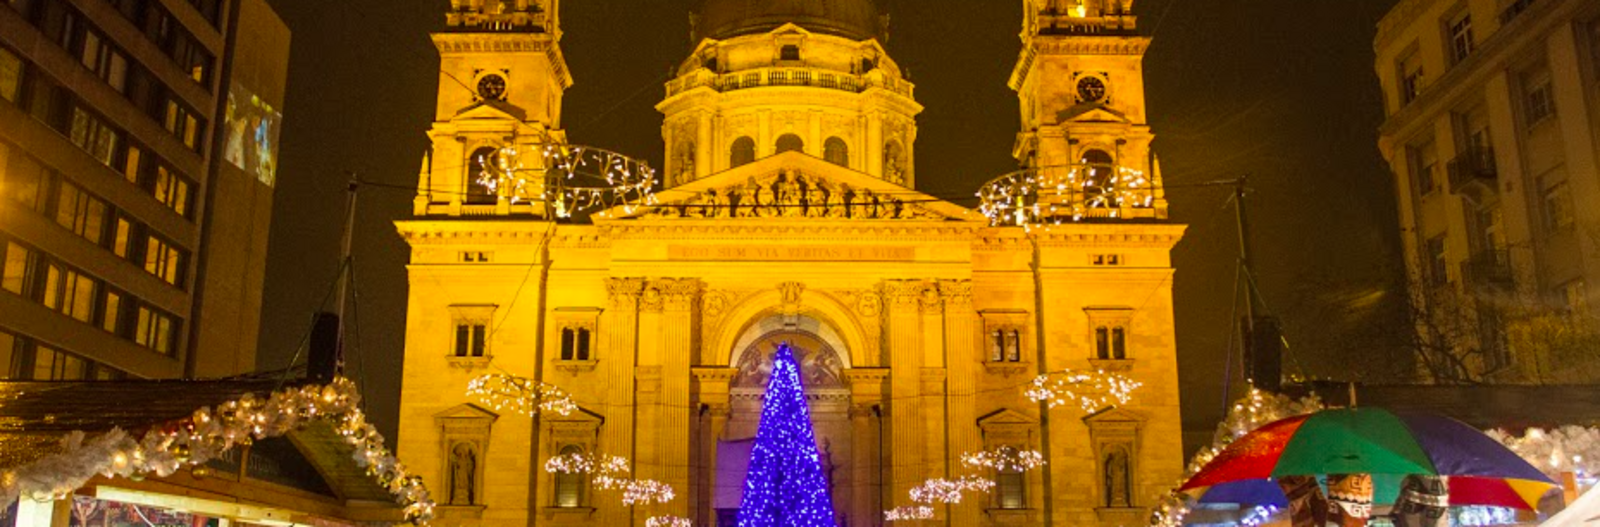 Az idei tél kihagyhatatlan látnivalói és programjai Budapesten